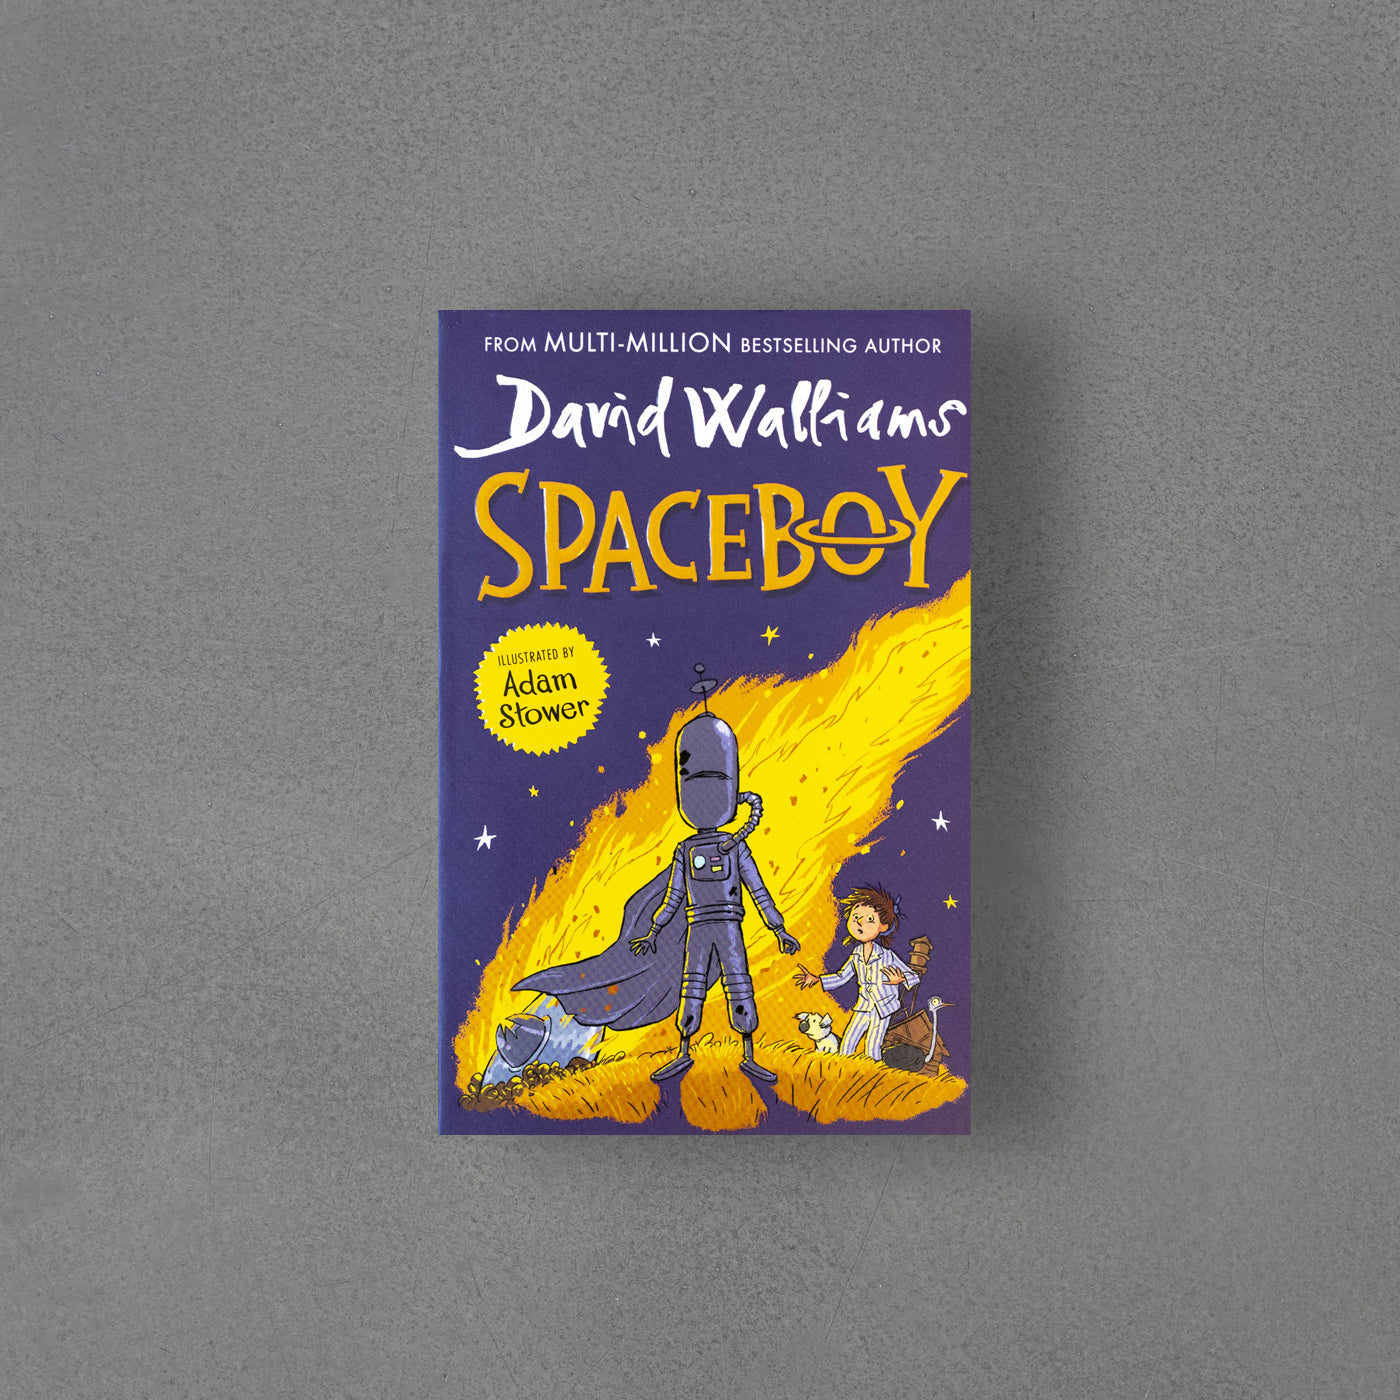 SPACEBOY – David Walliams